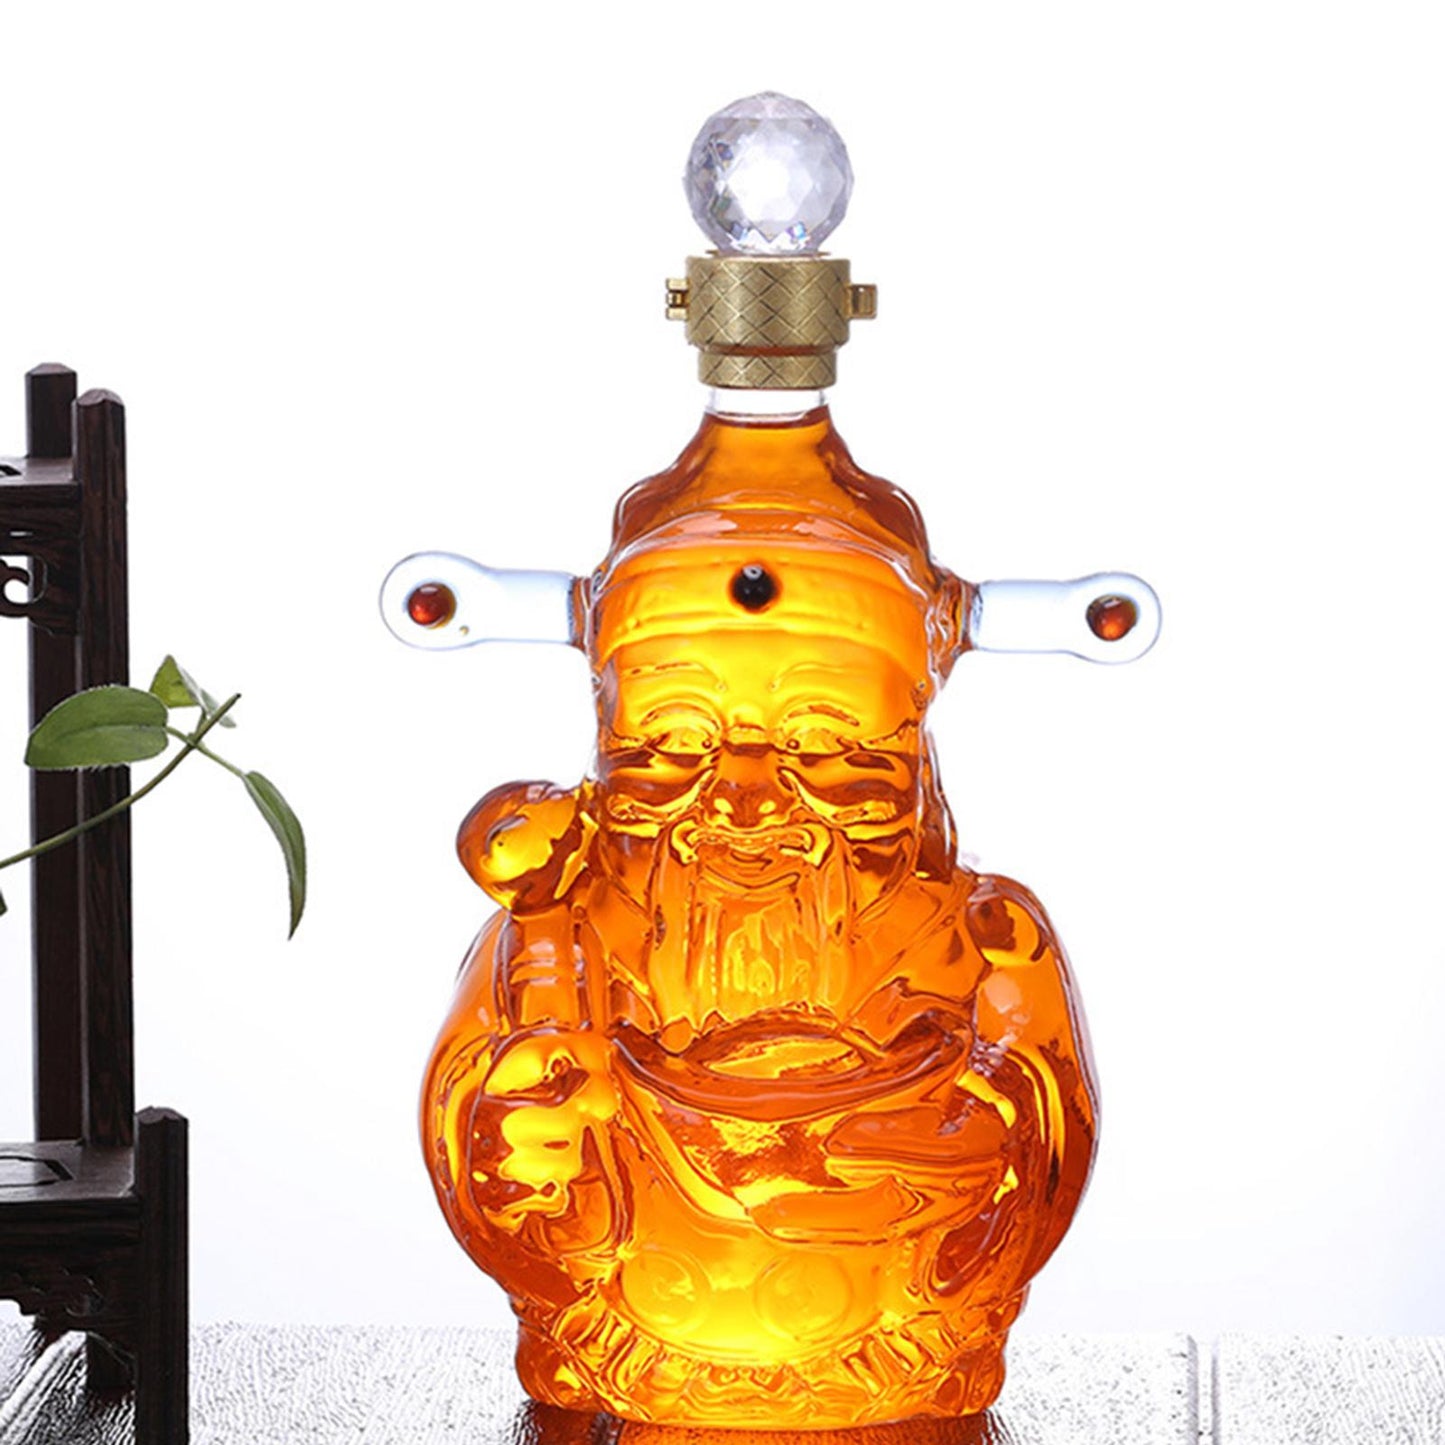 Chai Sen Ye designed decanters for prosperity